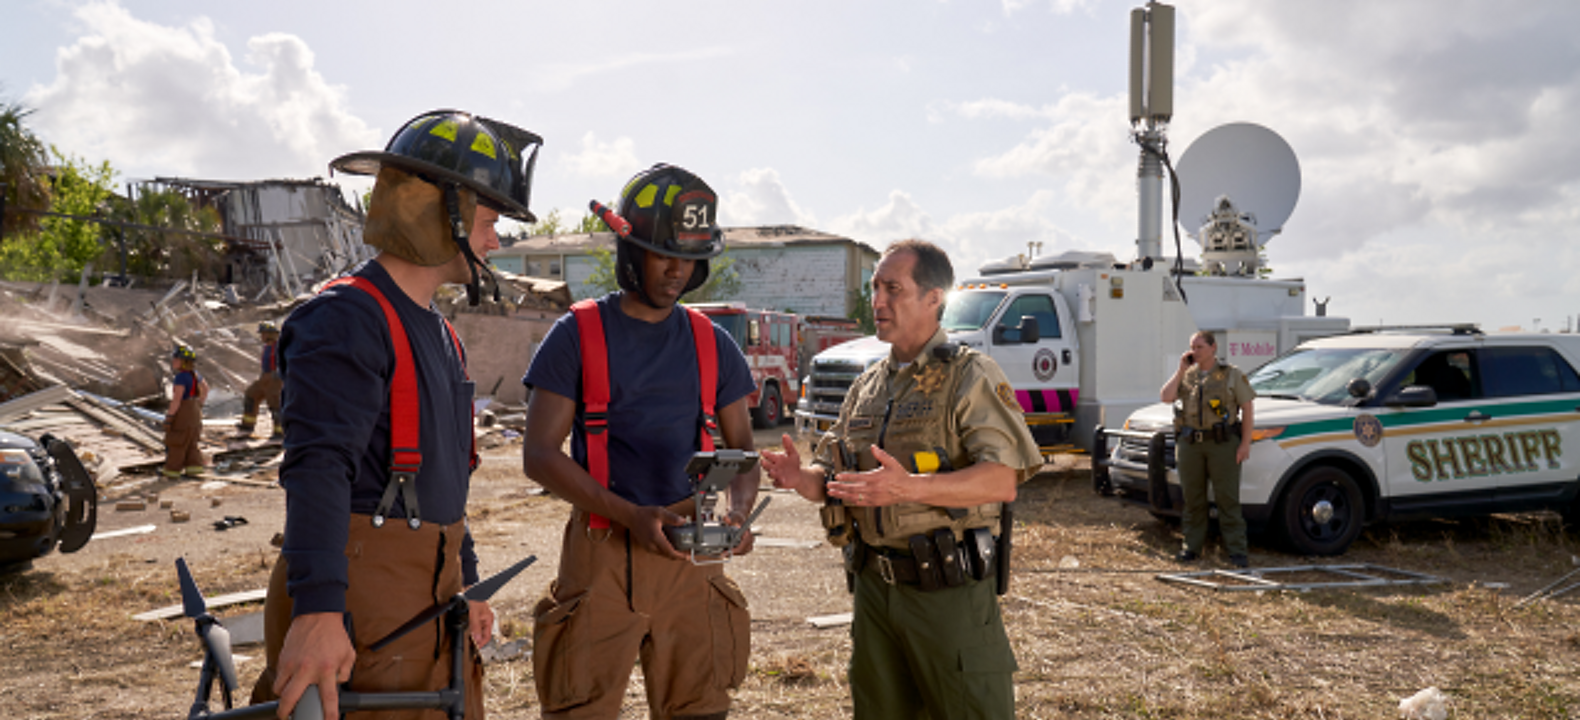 Dos bomberos sostienen un dron y su control mientras hablan con un alguacil en un sitio de respuesta a una emergencia.